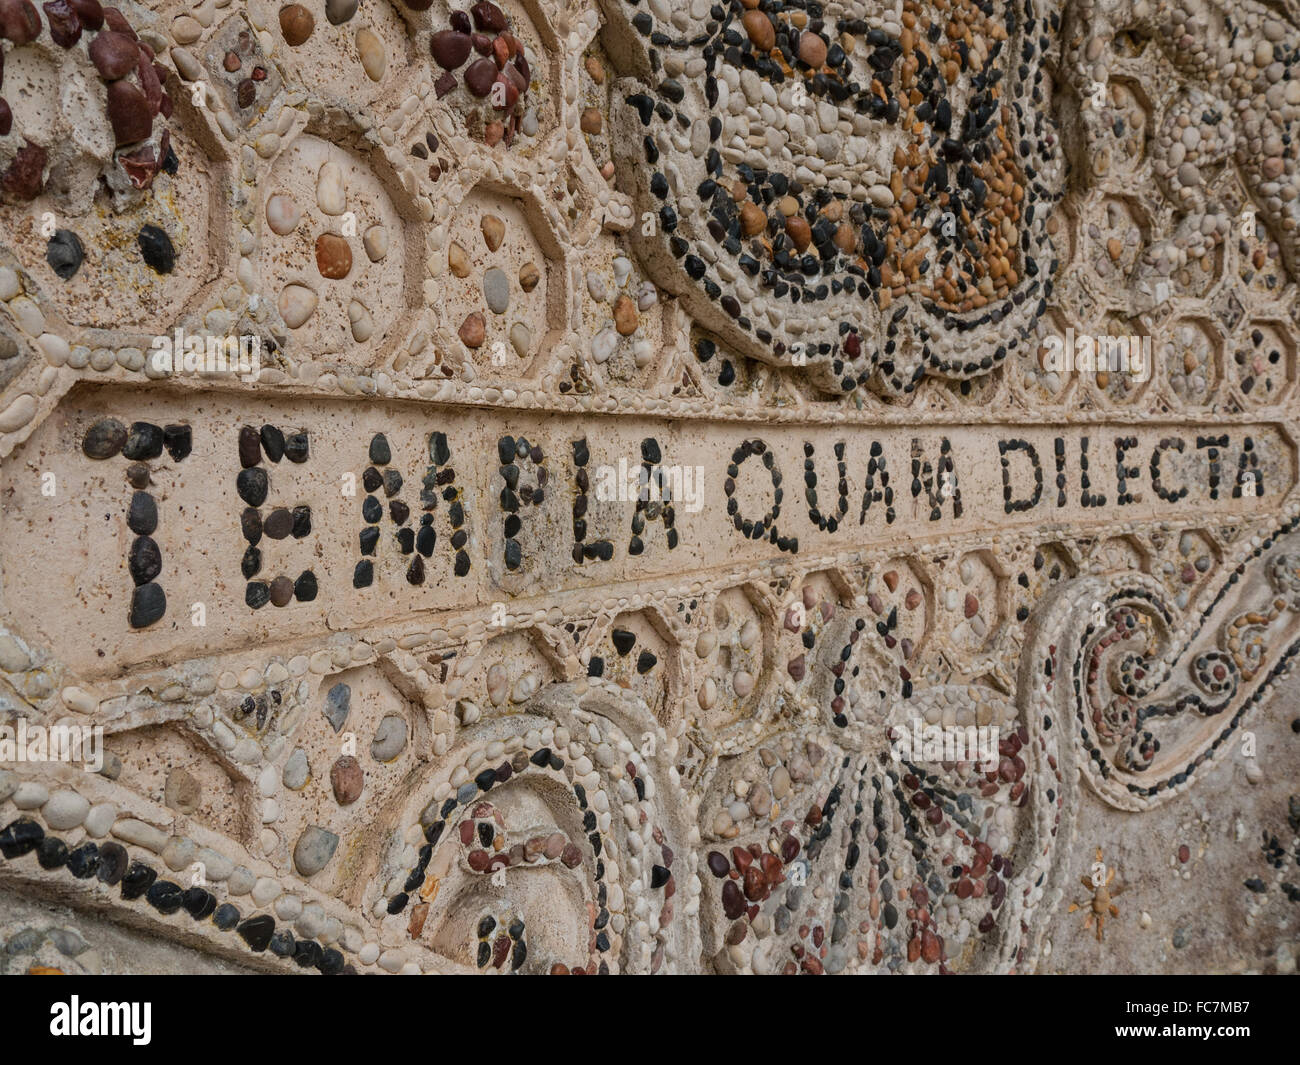 Mosaik, die Darstellung des Wortlauts Templa Quam Dilecta, was übersetzt bedeutet, wie schön dein Tempel sind. Stockfoto